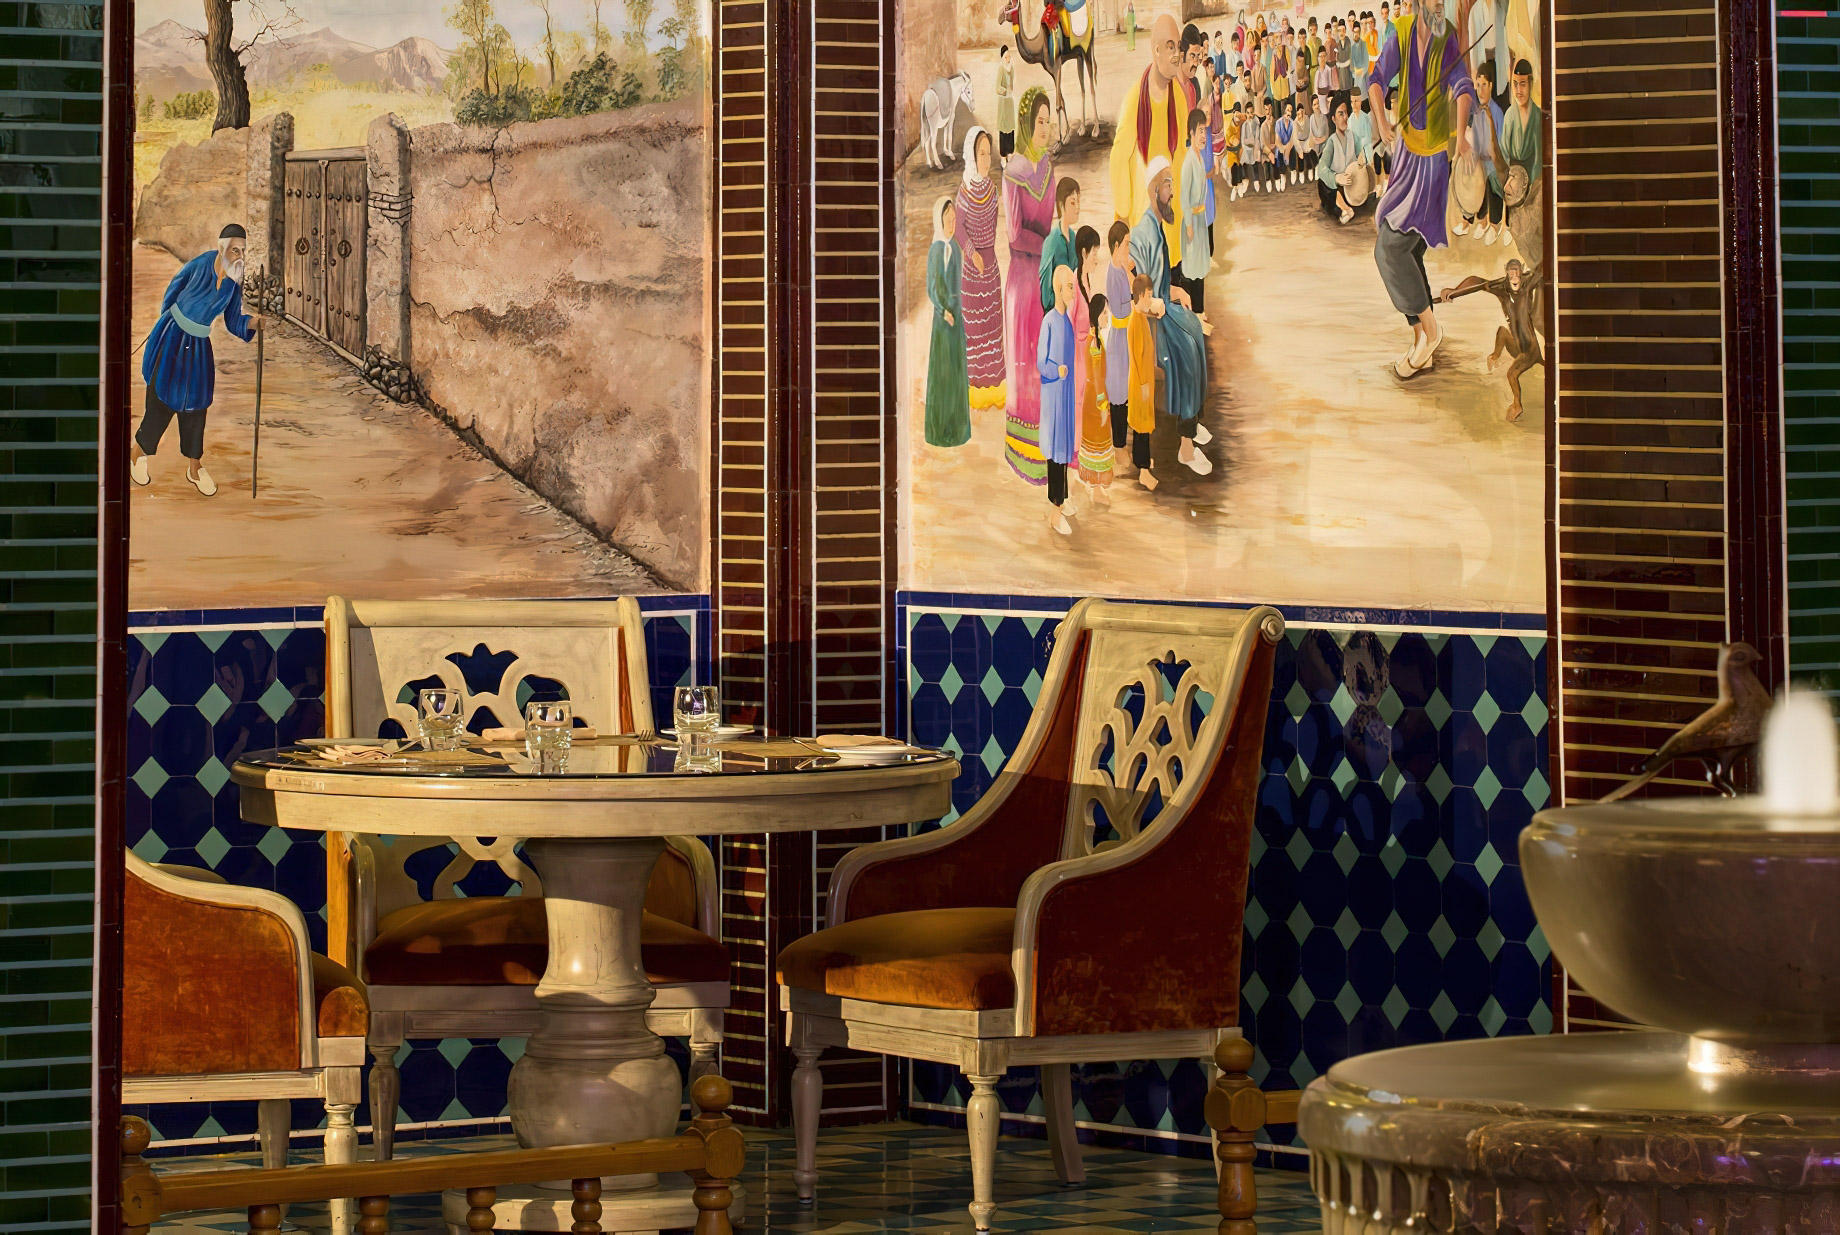 Sharq Village & Spa, A Ritz-Carlton Hotel – Doha, Qatar – At Parisa Souq Waqif Restaurant Table